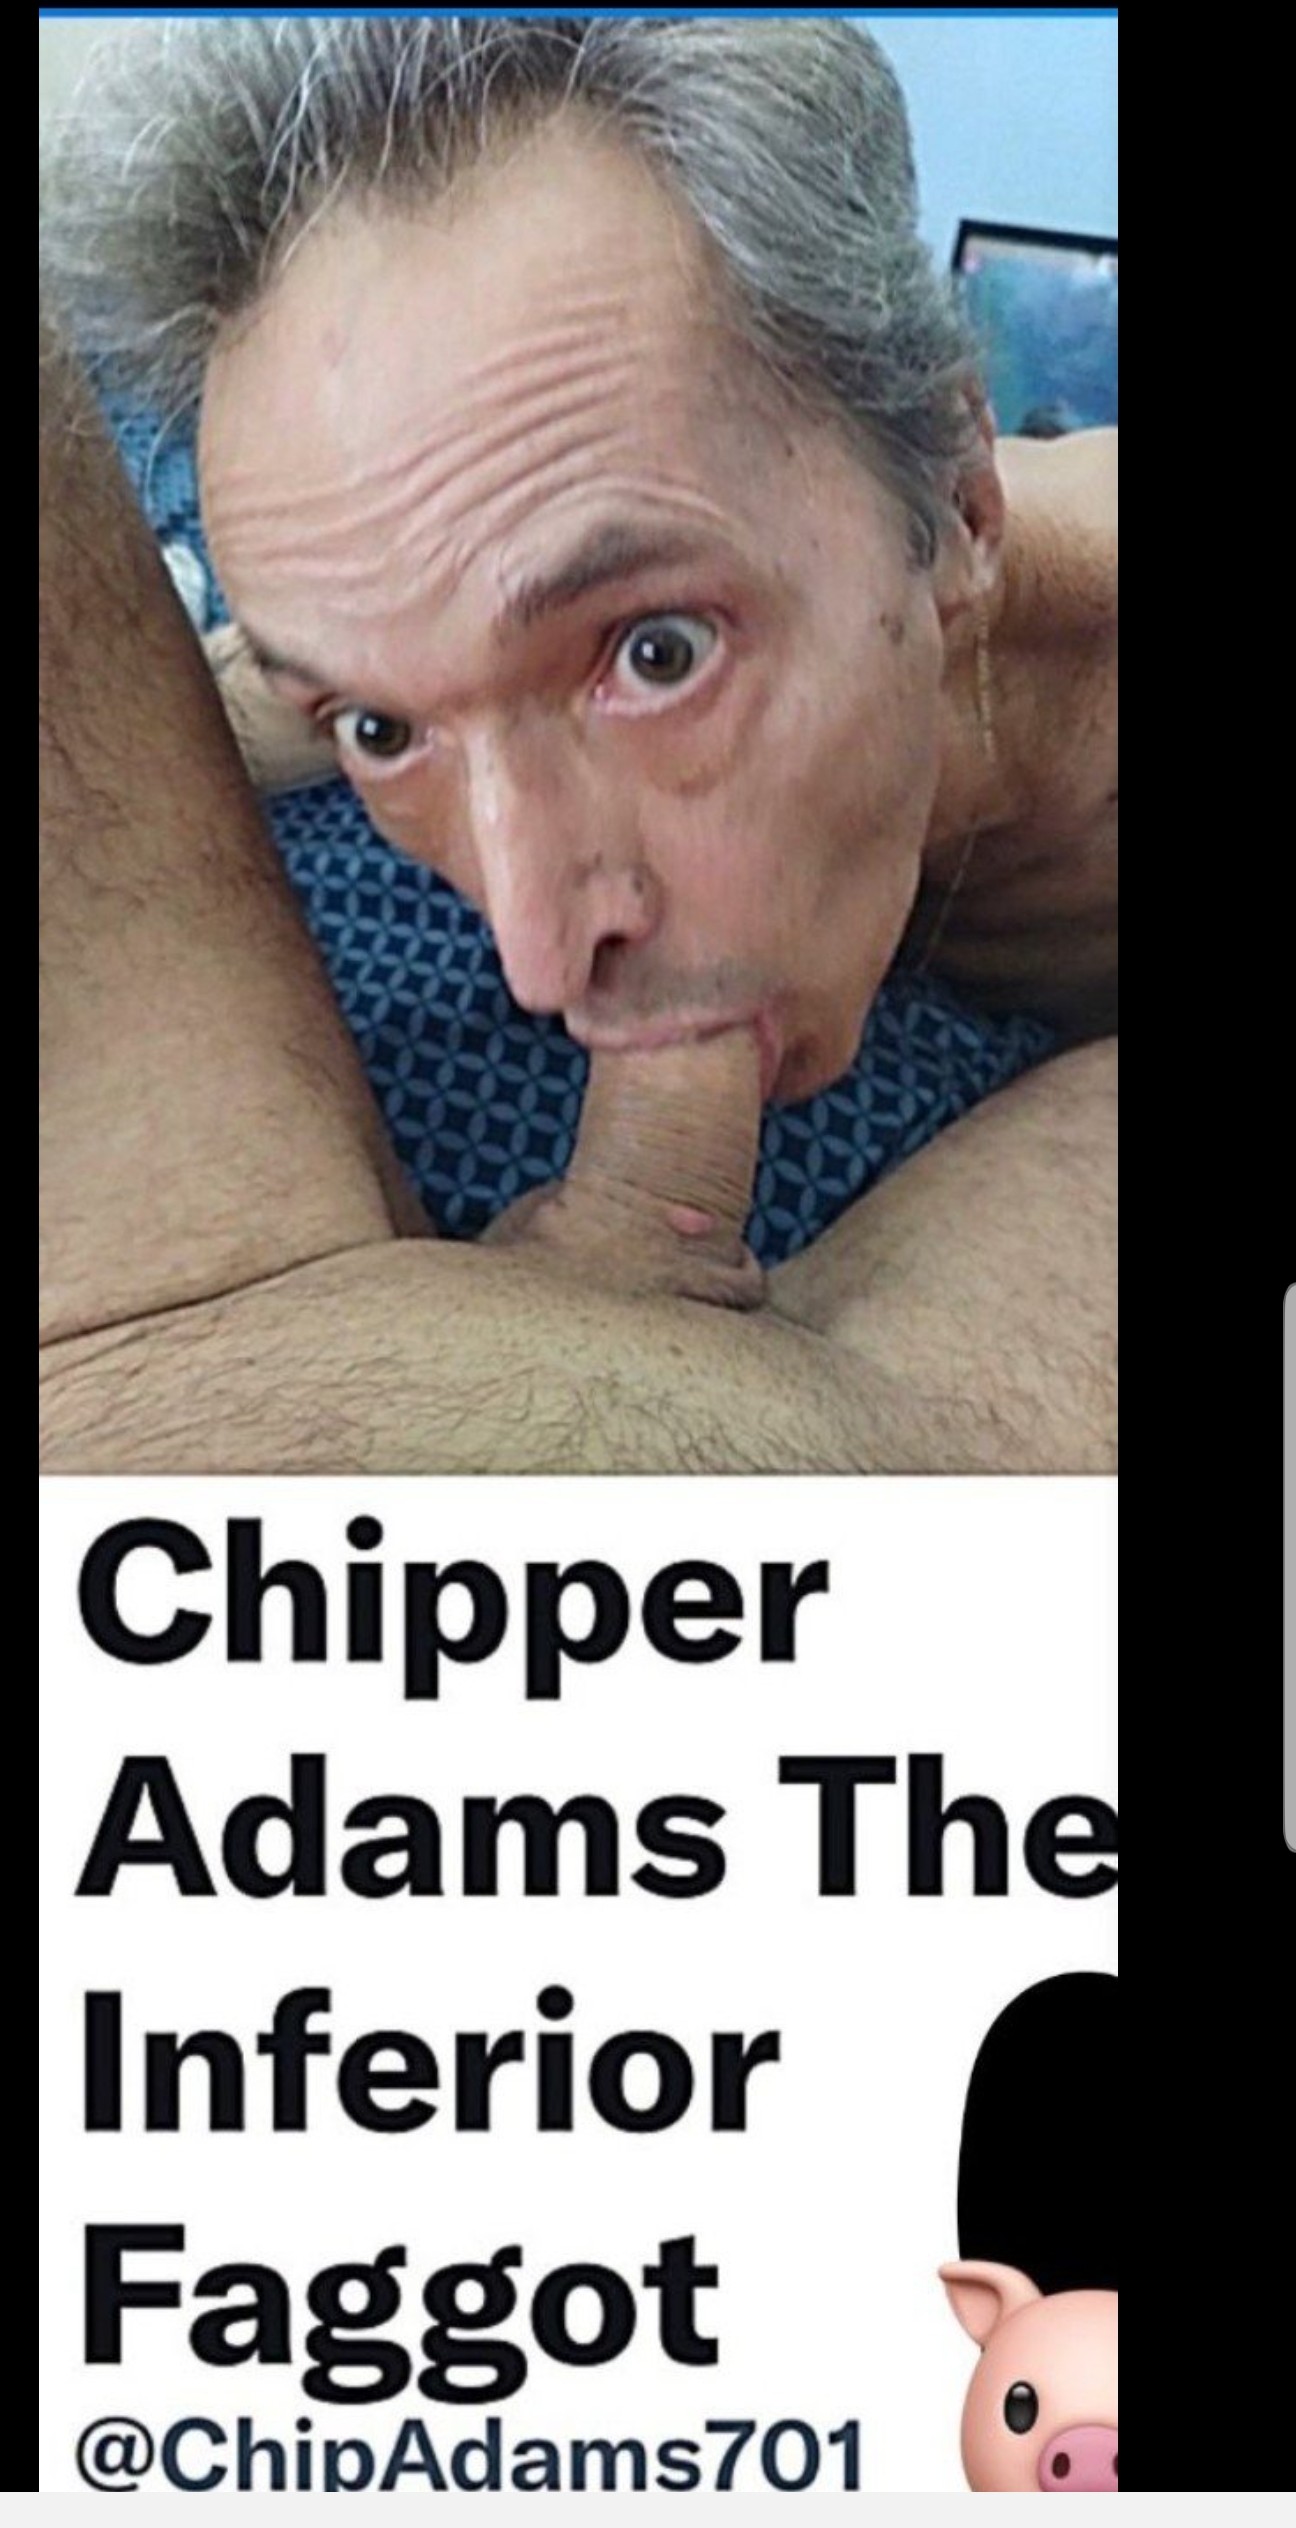 Chipper Adams loves cock